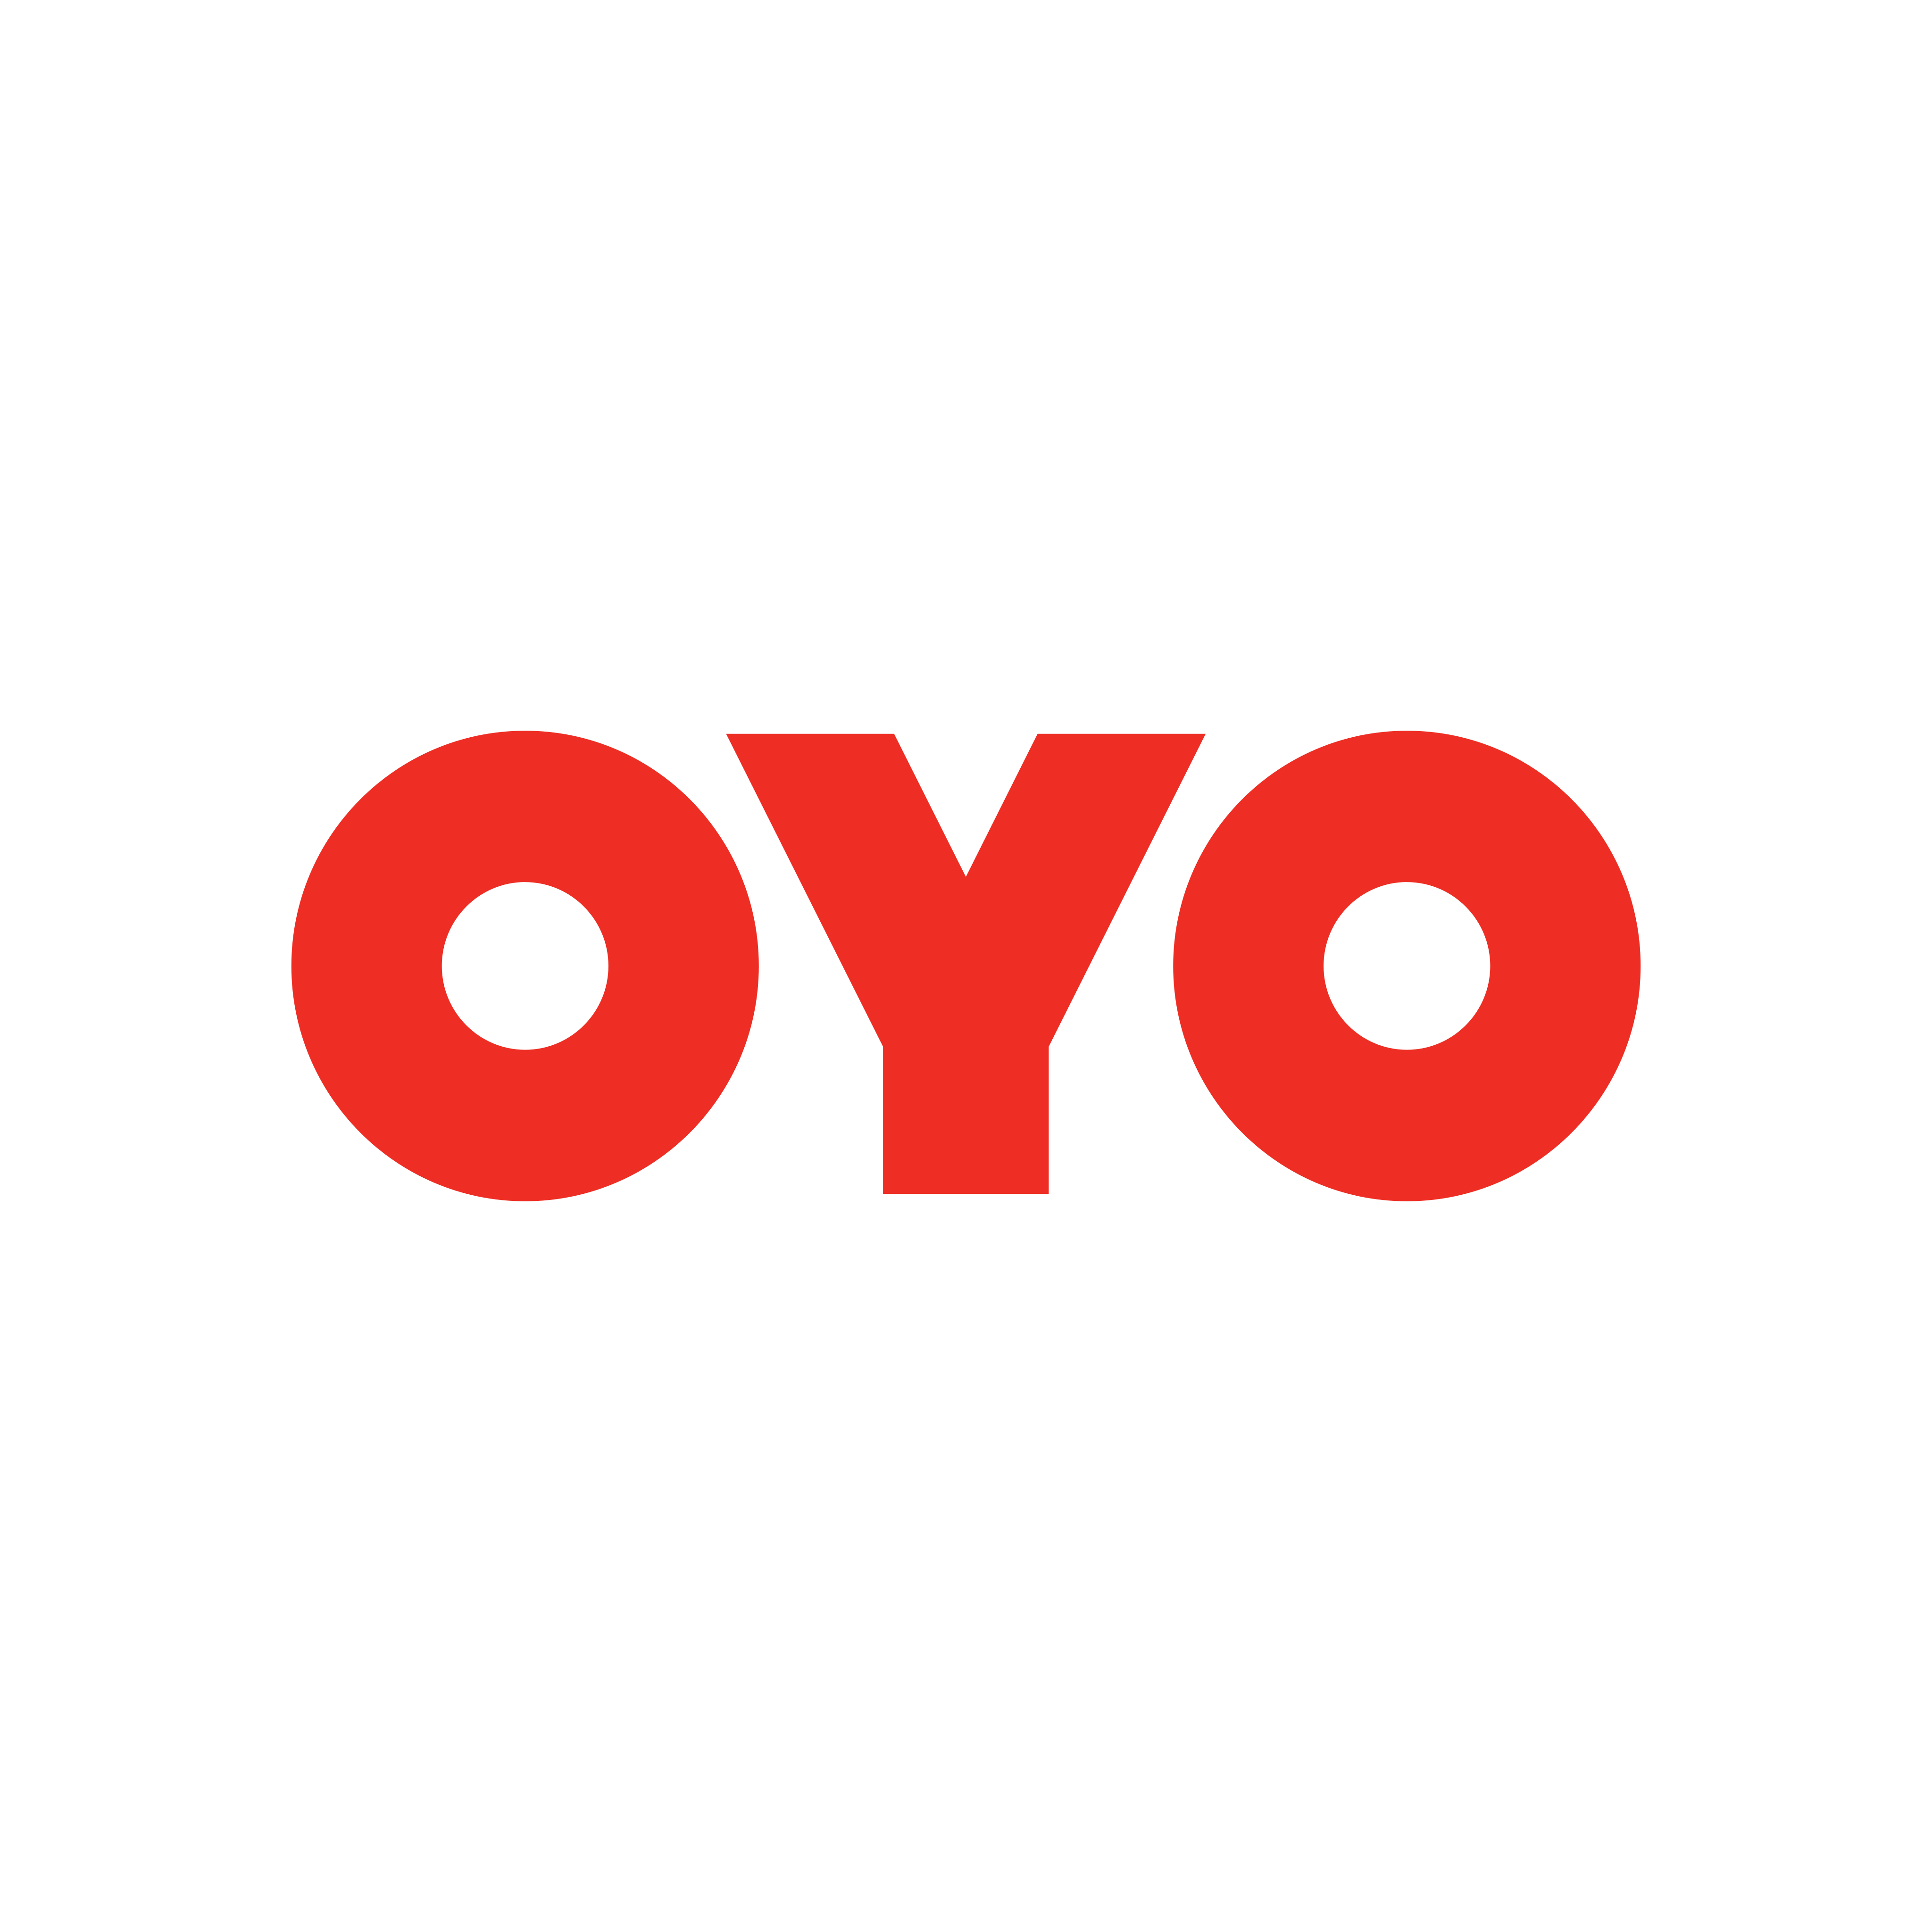 oyo logo 0 - OYO Logo